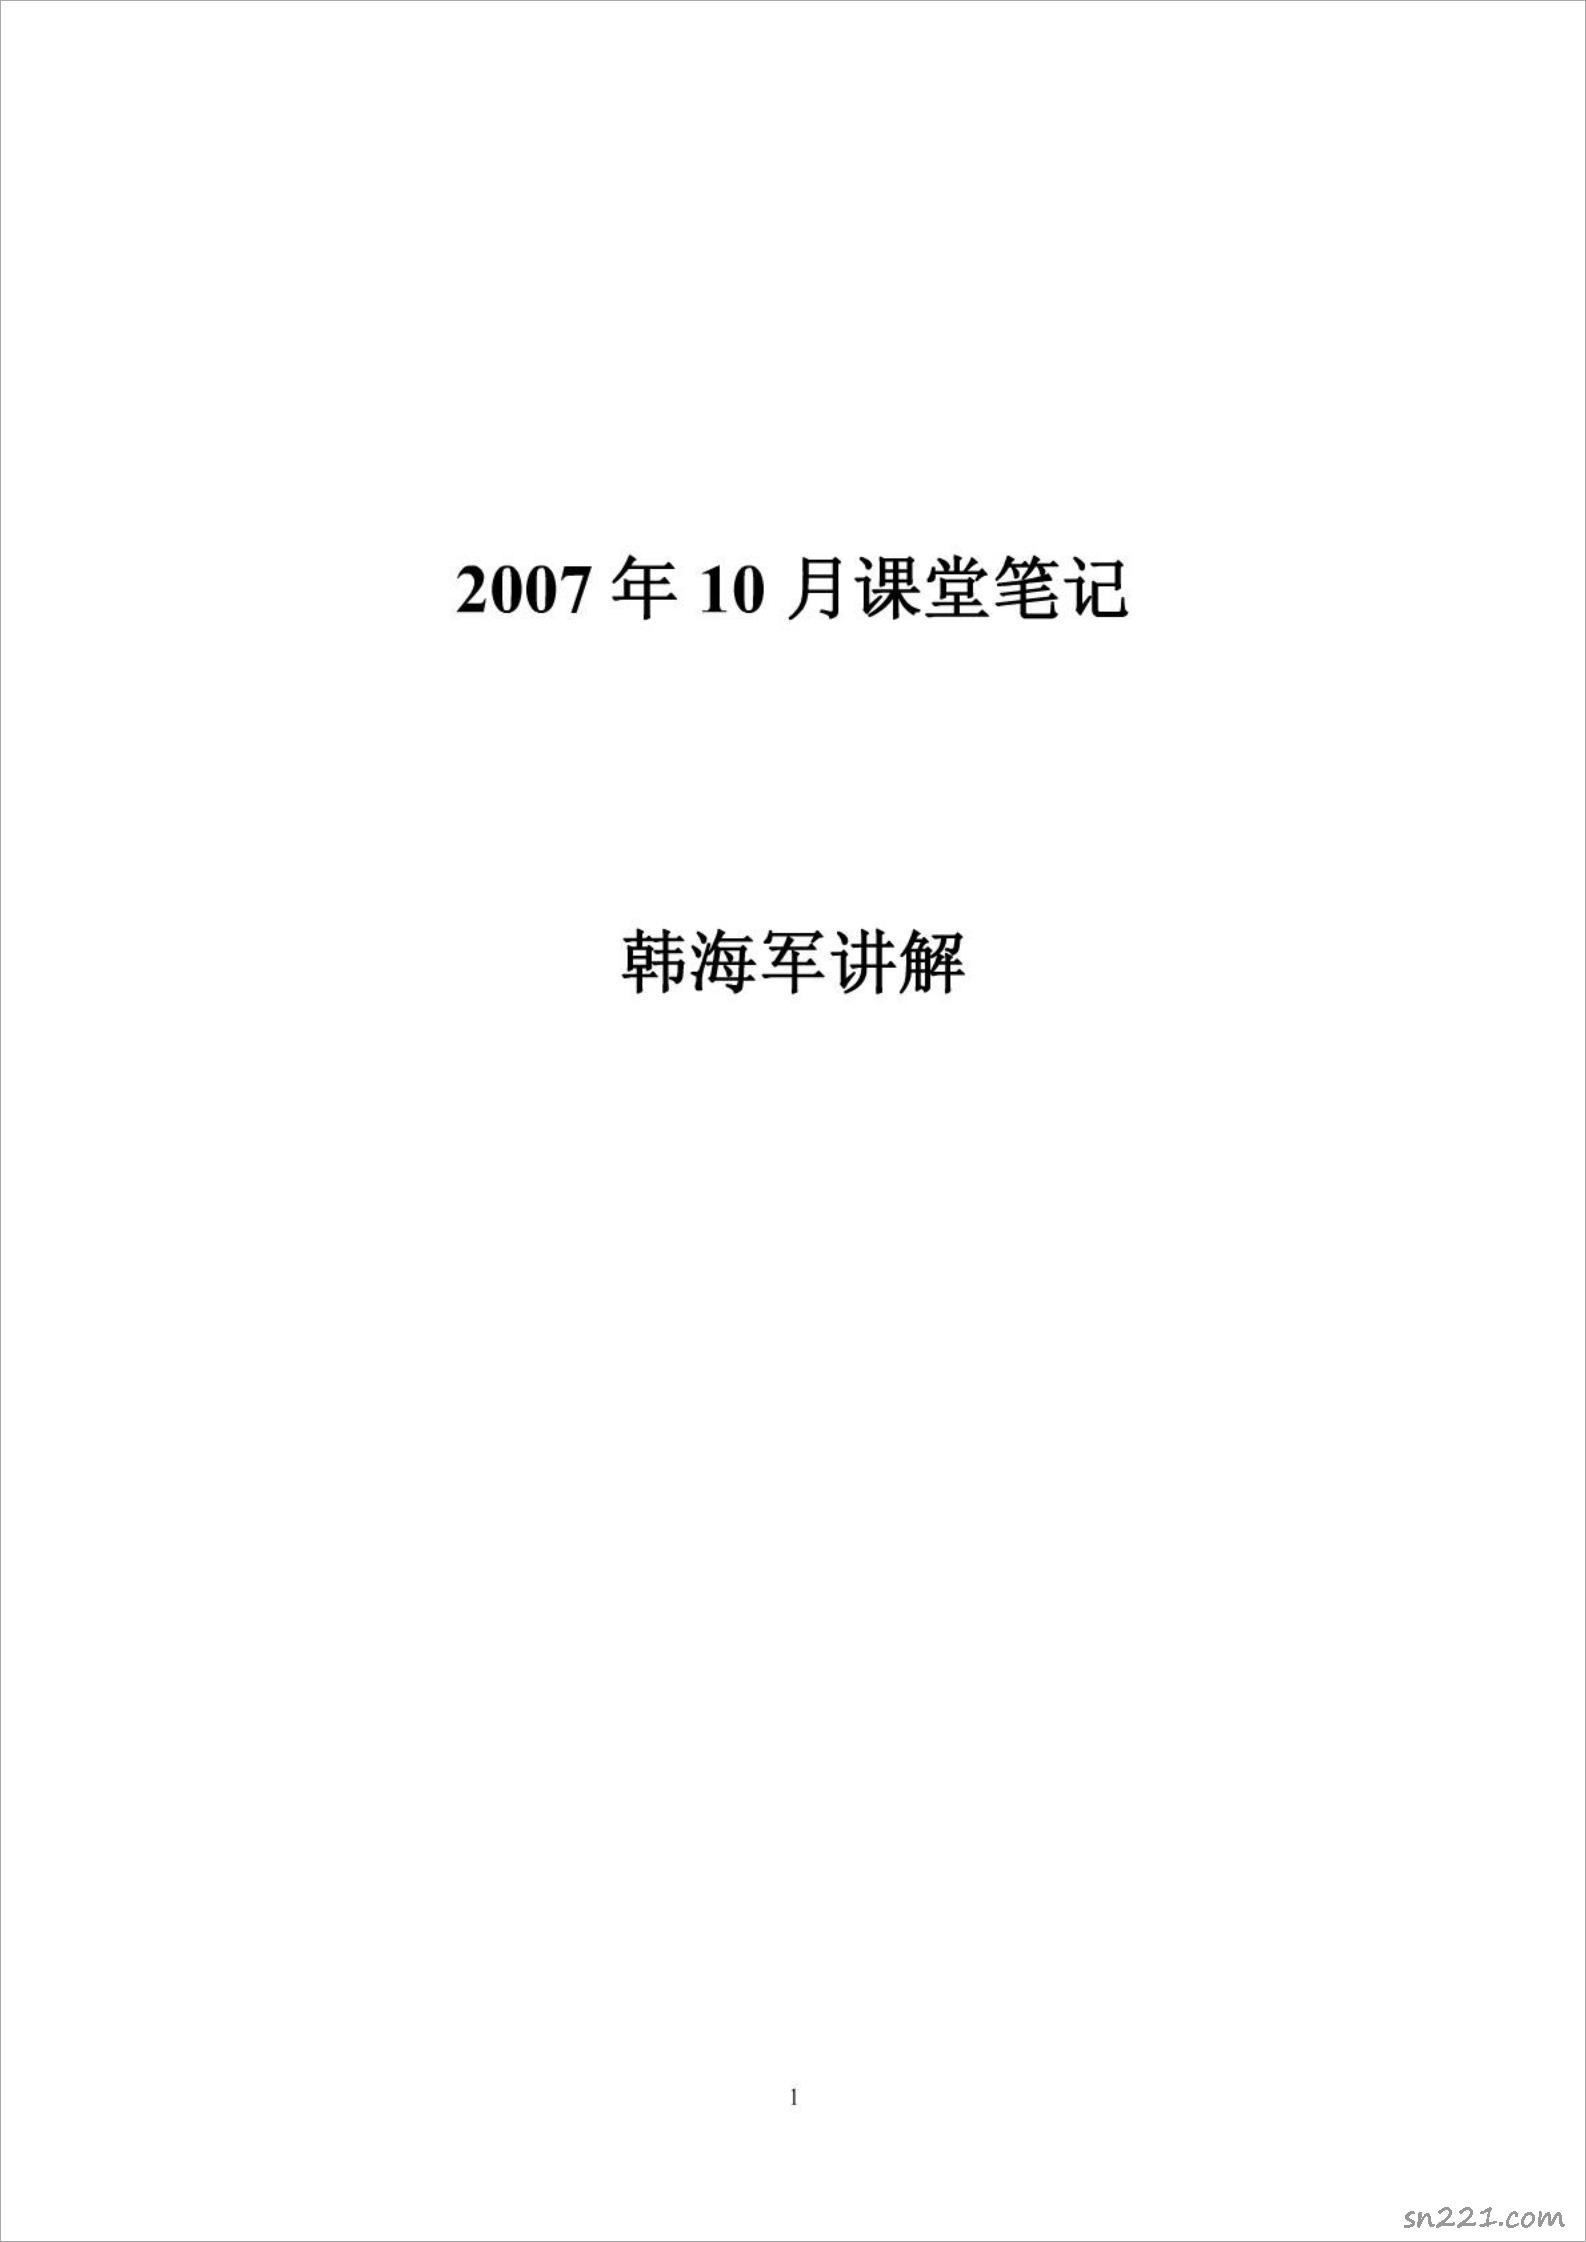 韓海軍2007年10月講課筆記2.pdf